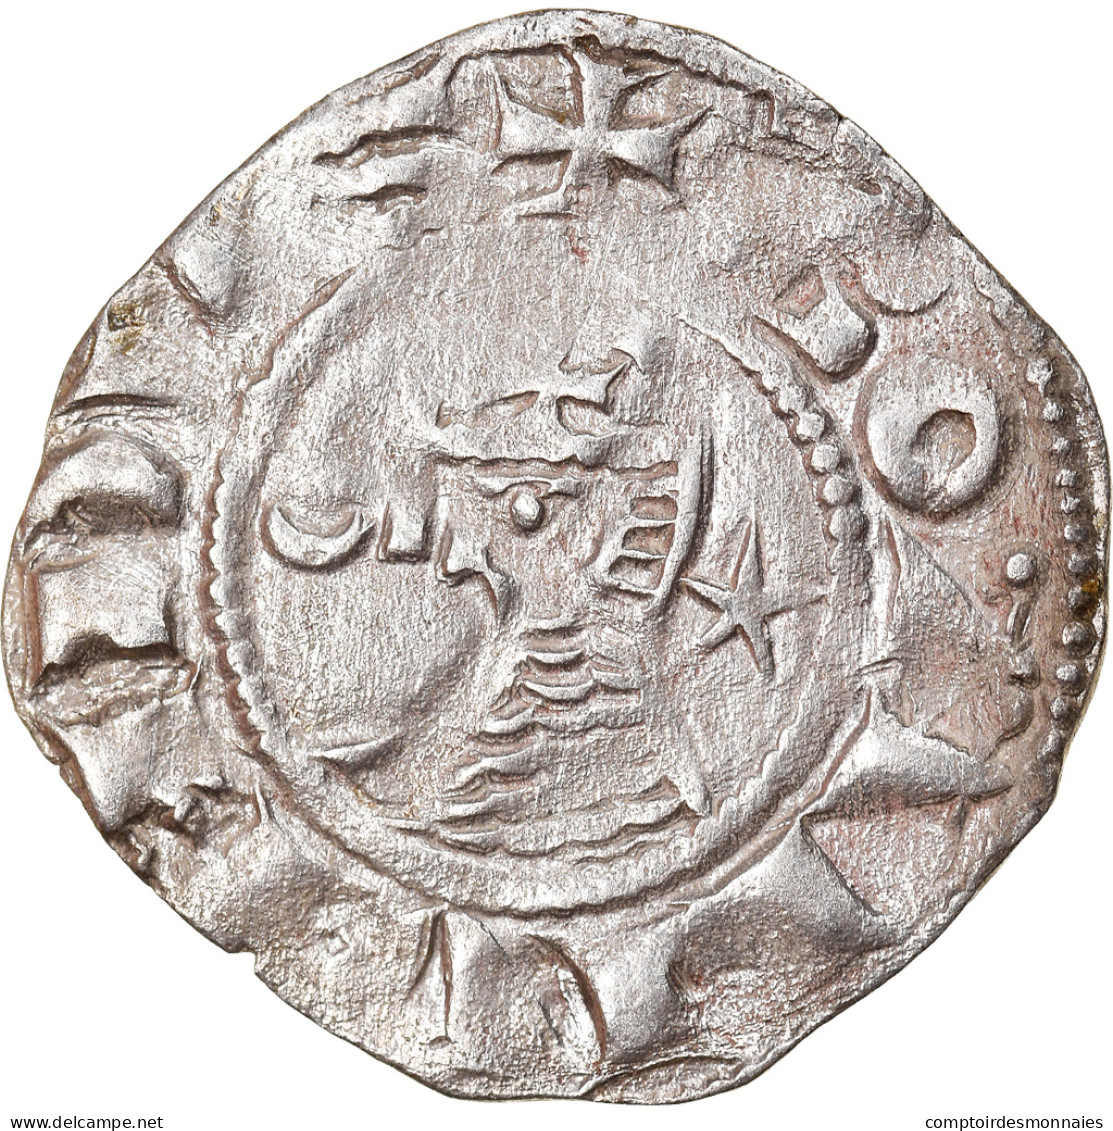 Monnaie, Turquie, Crusader States, Bohemund III, Denier, 1163-1201, Antioche - Turquie